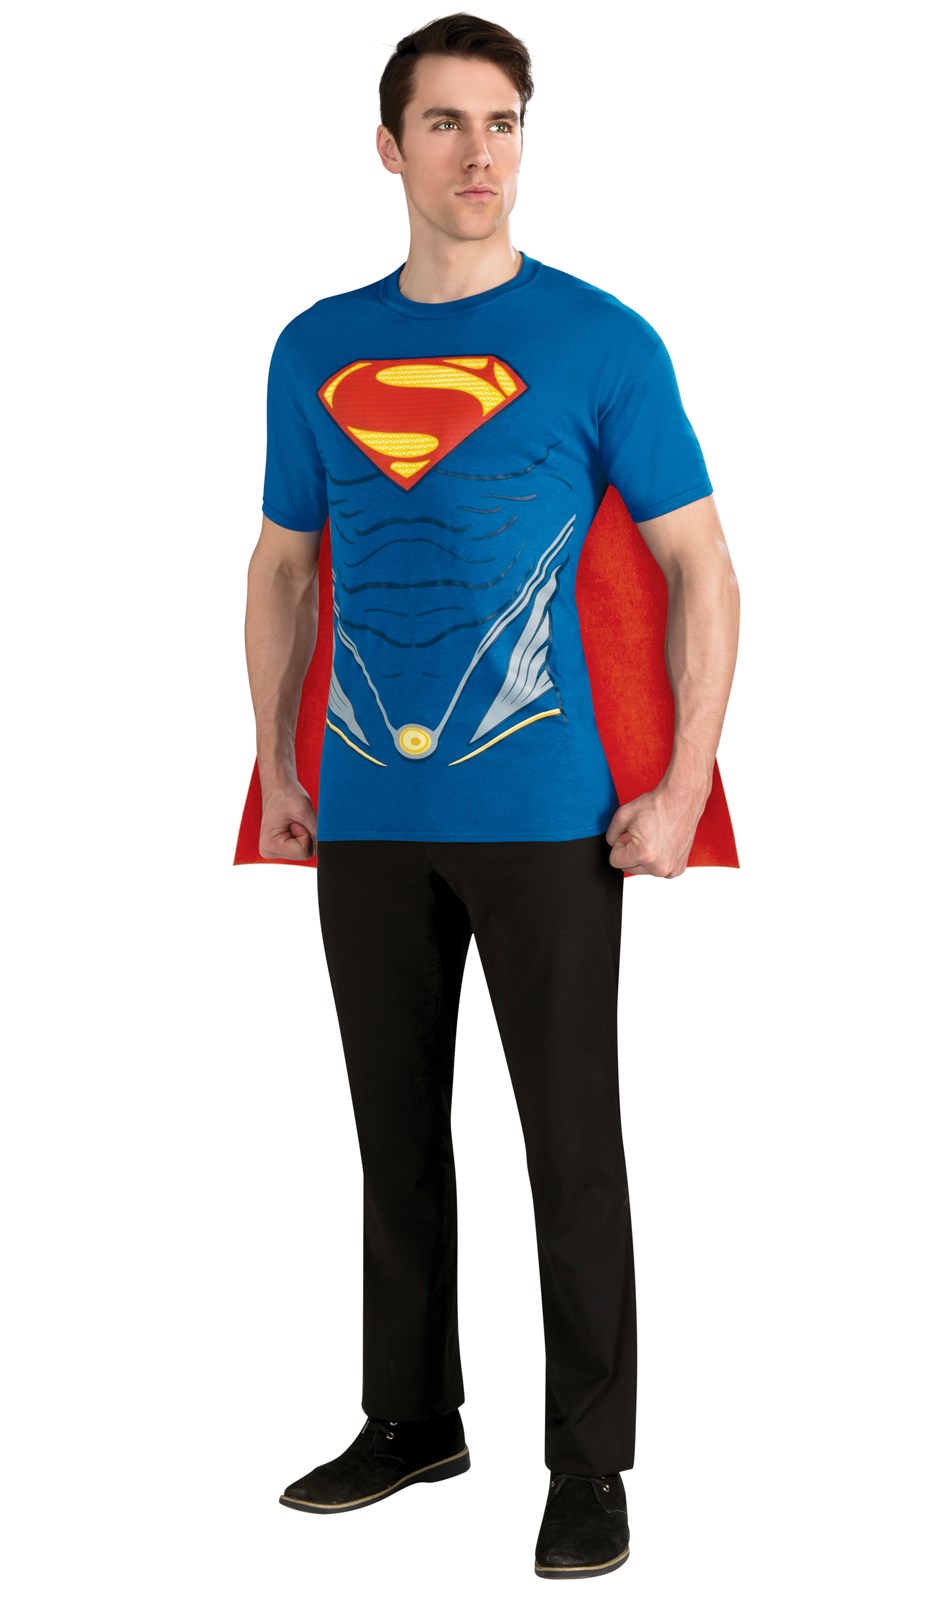 Superman Man of Steel Adult Costume Kit